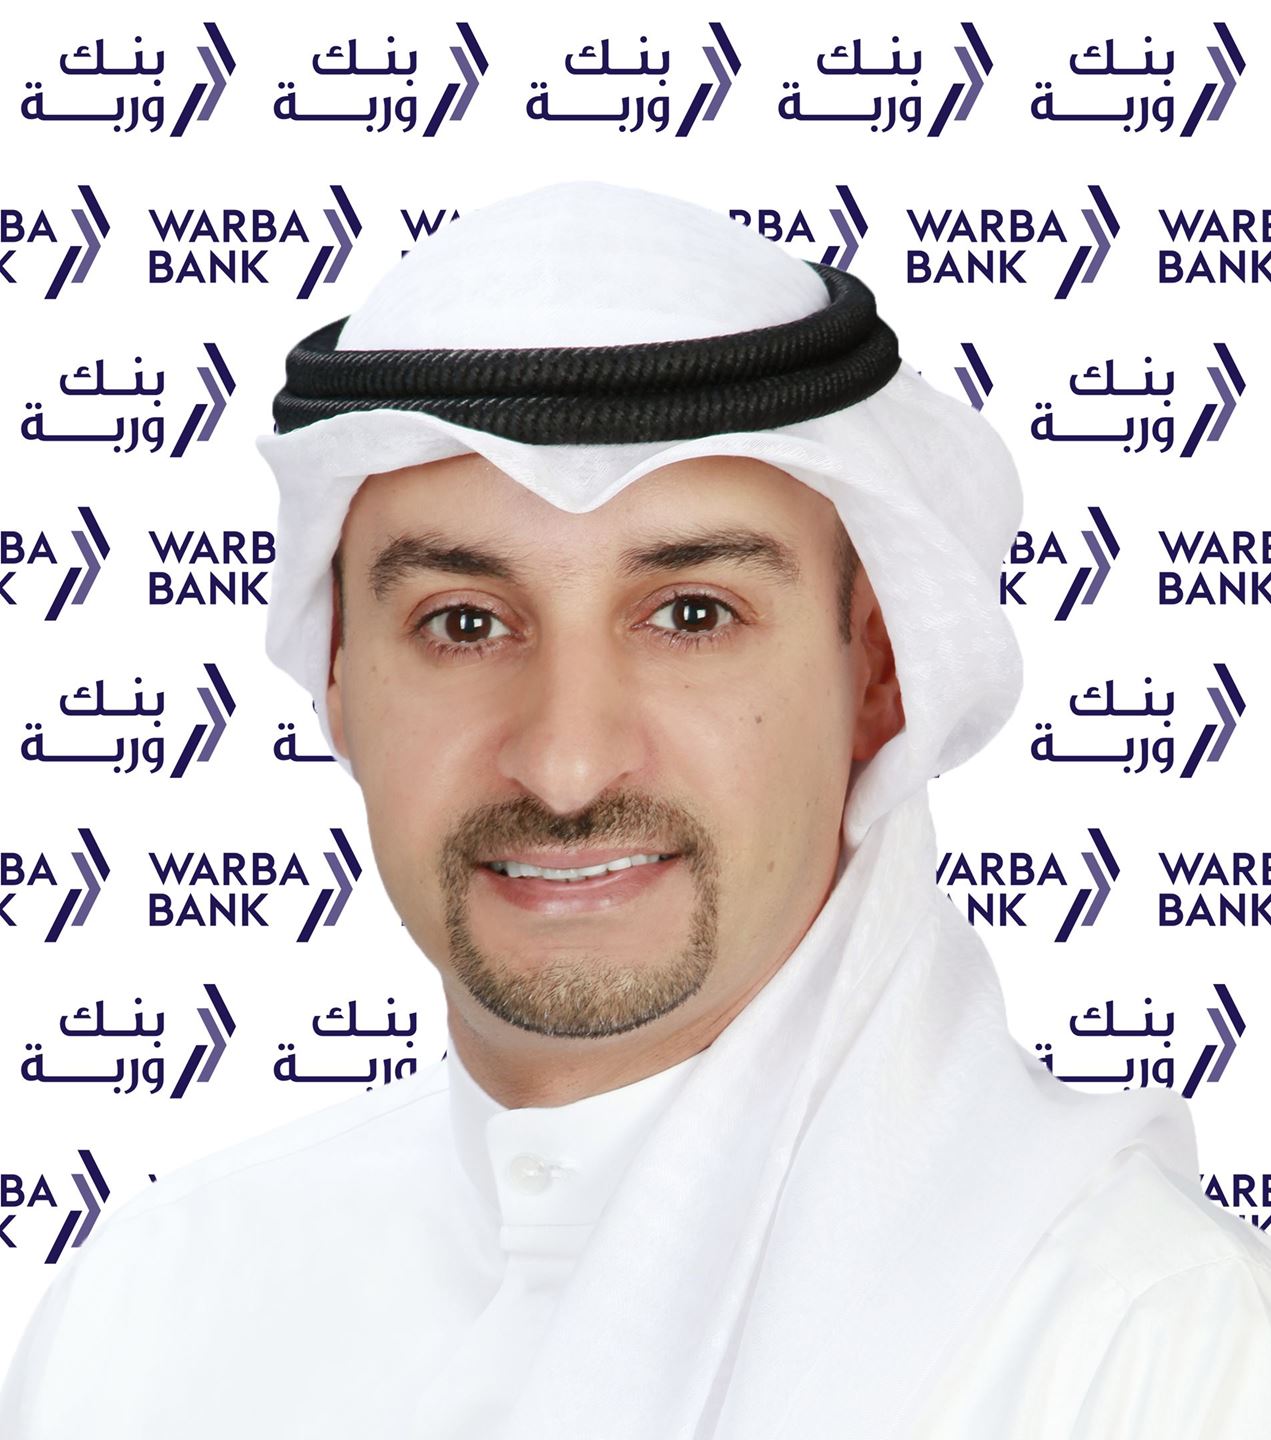 السيد أيمن سالم المطيري  - المدير التنفيذي للاتصال المؤسسي في بنك وربة